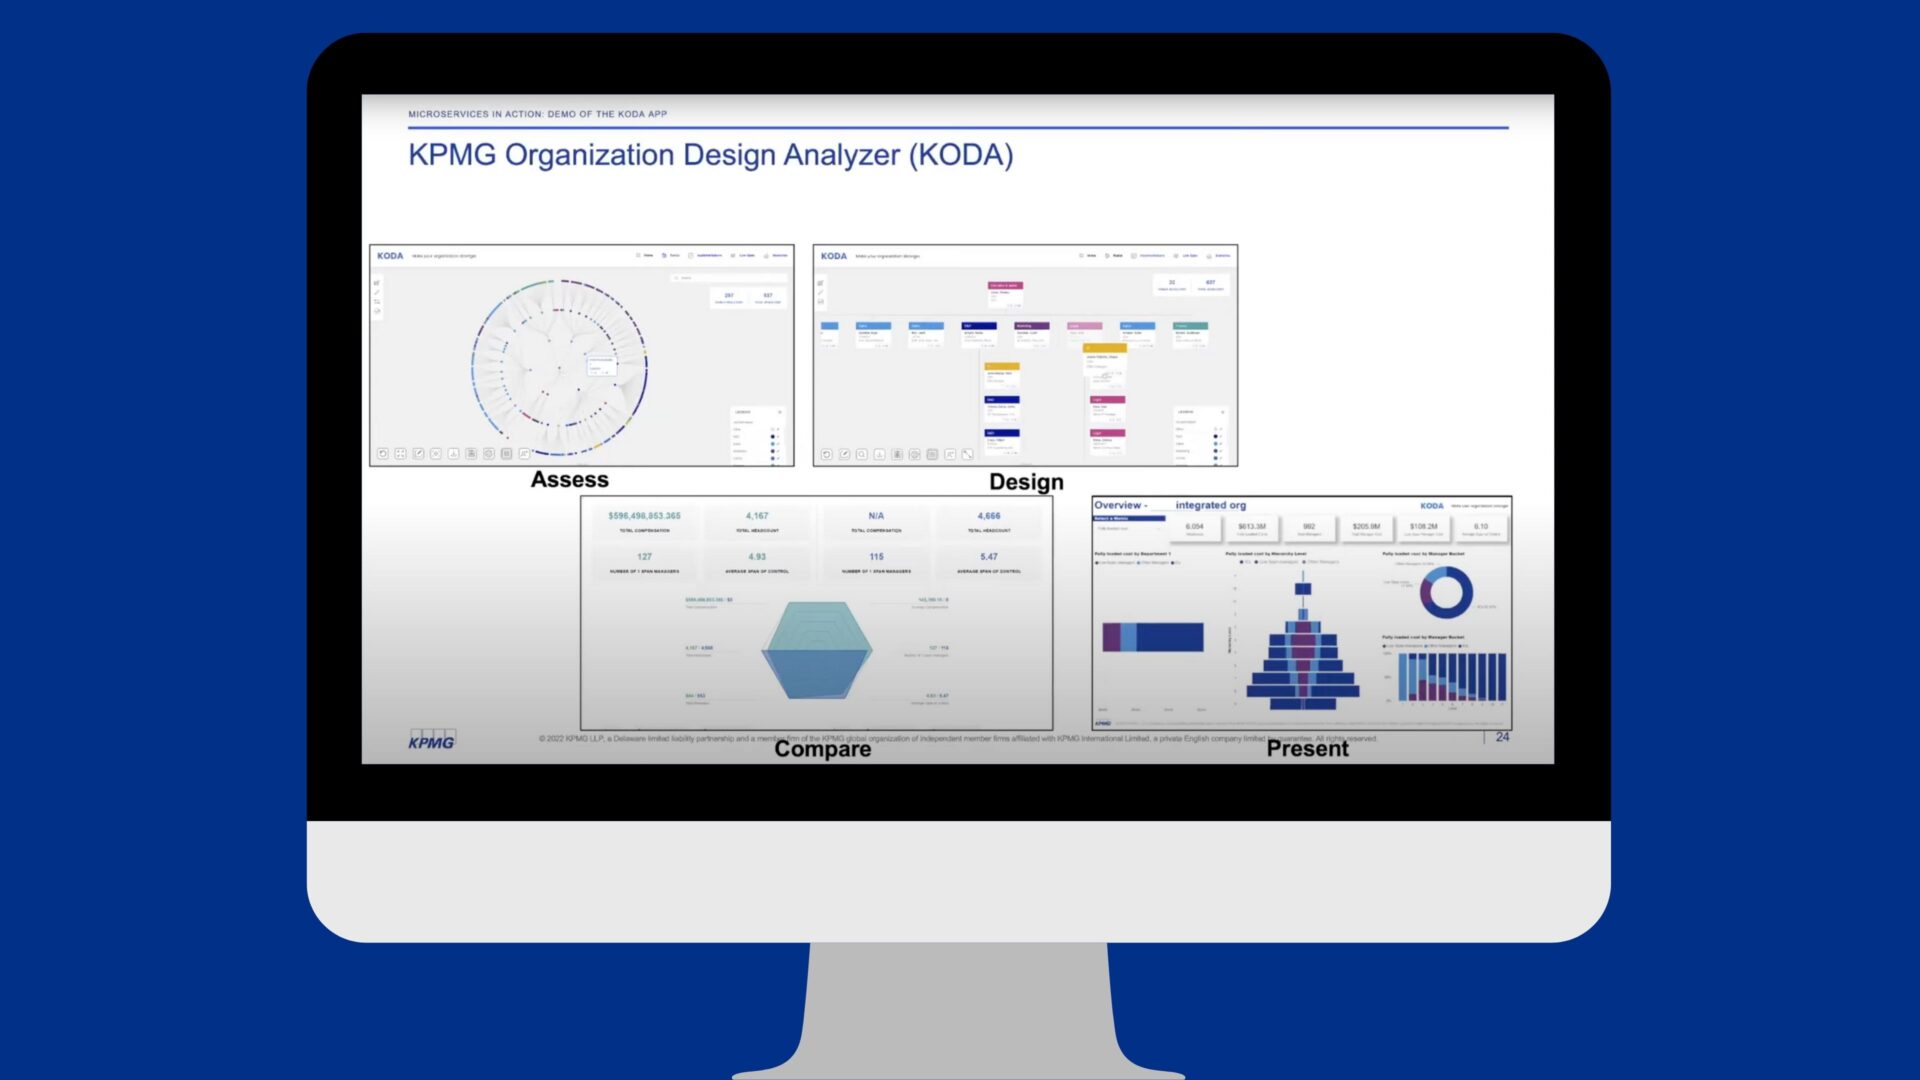 The KPMG Organization Design Analyzer dashboard showing various metrics